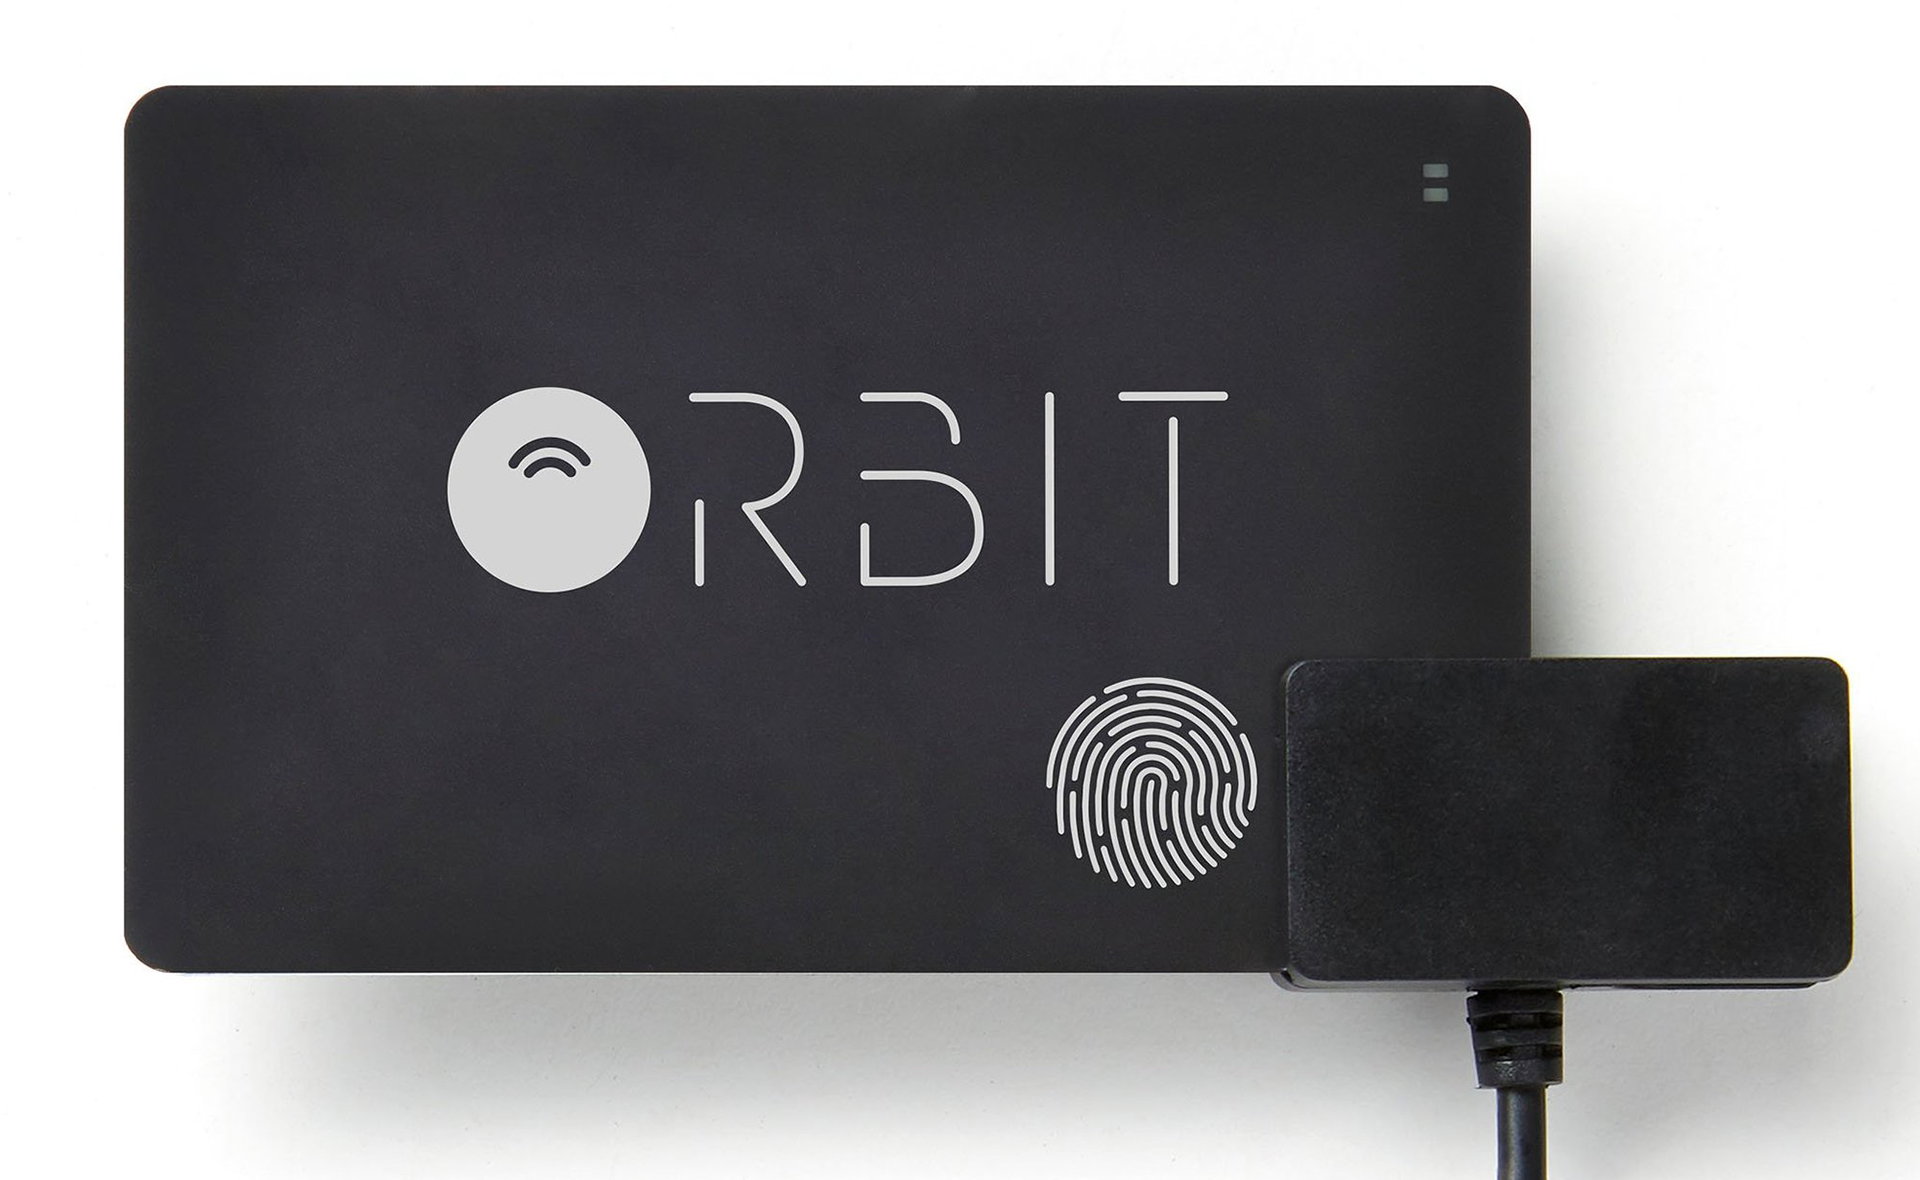 بطاقة Orbit Card لمعرفة مكان المحفظة والهاتف، أهم المعلومات عن بطاقة اوربيت